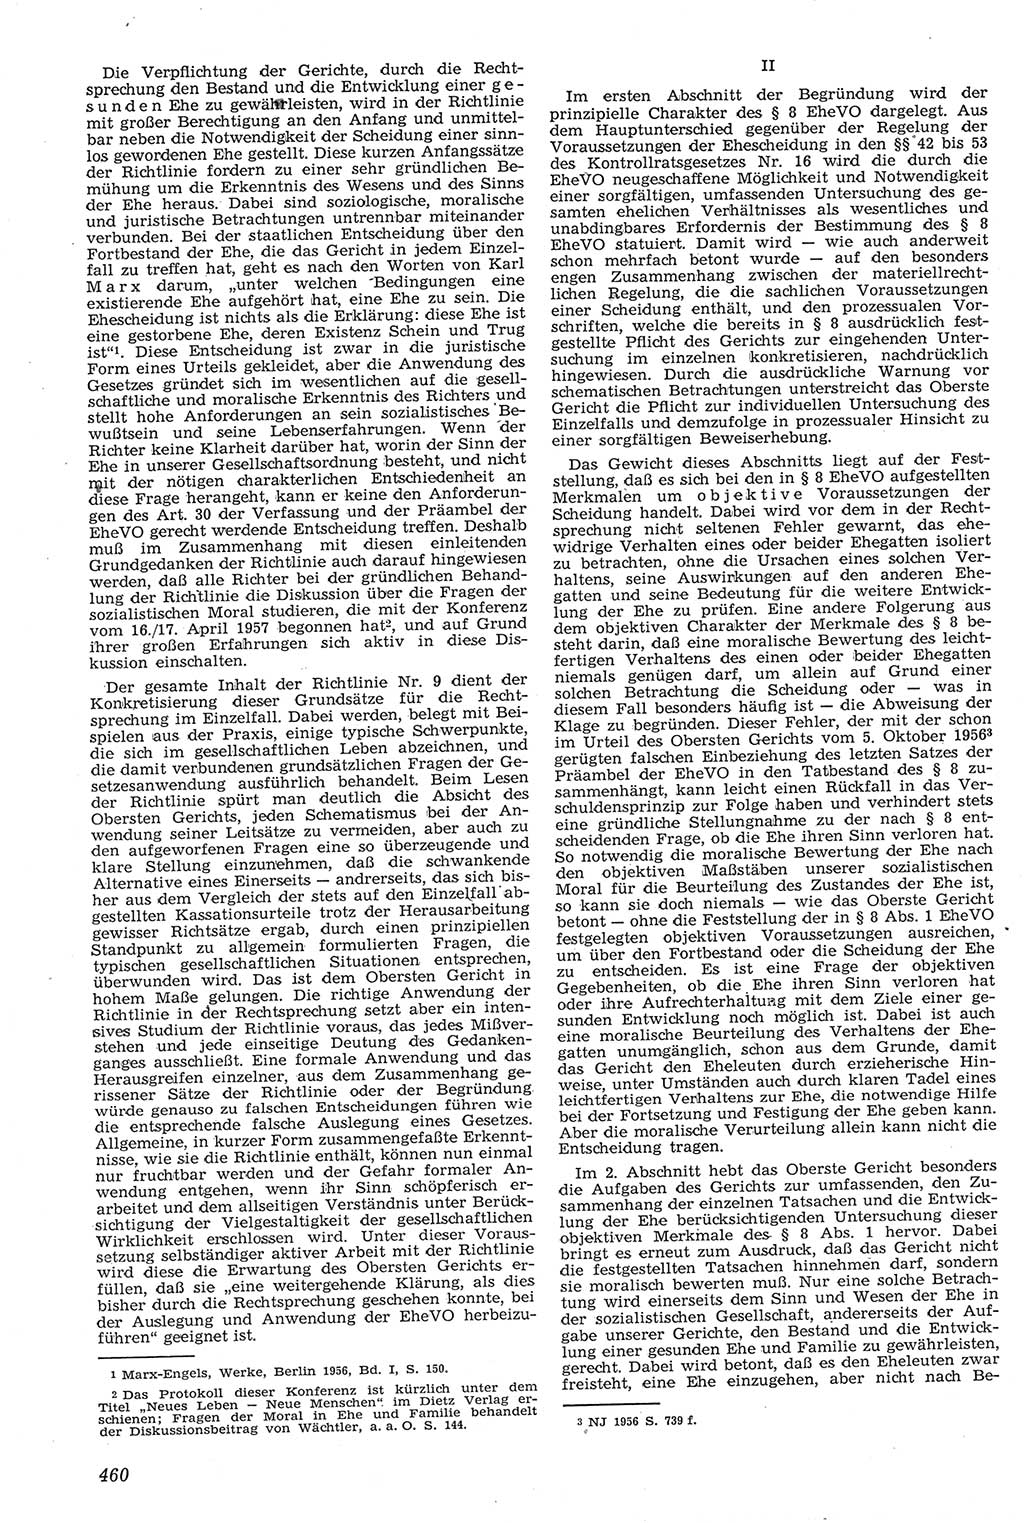 Neue Justiz (NJ), Zeitschrift für Recht und Rechtswissenschaft [Deutsche Demokratische Republik (DDR)], 11. Jahrgang 1957, Seite 460 (NJ DDR 1957, S. 460)